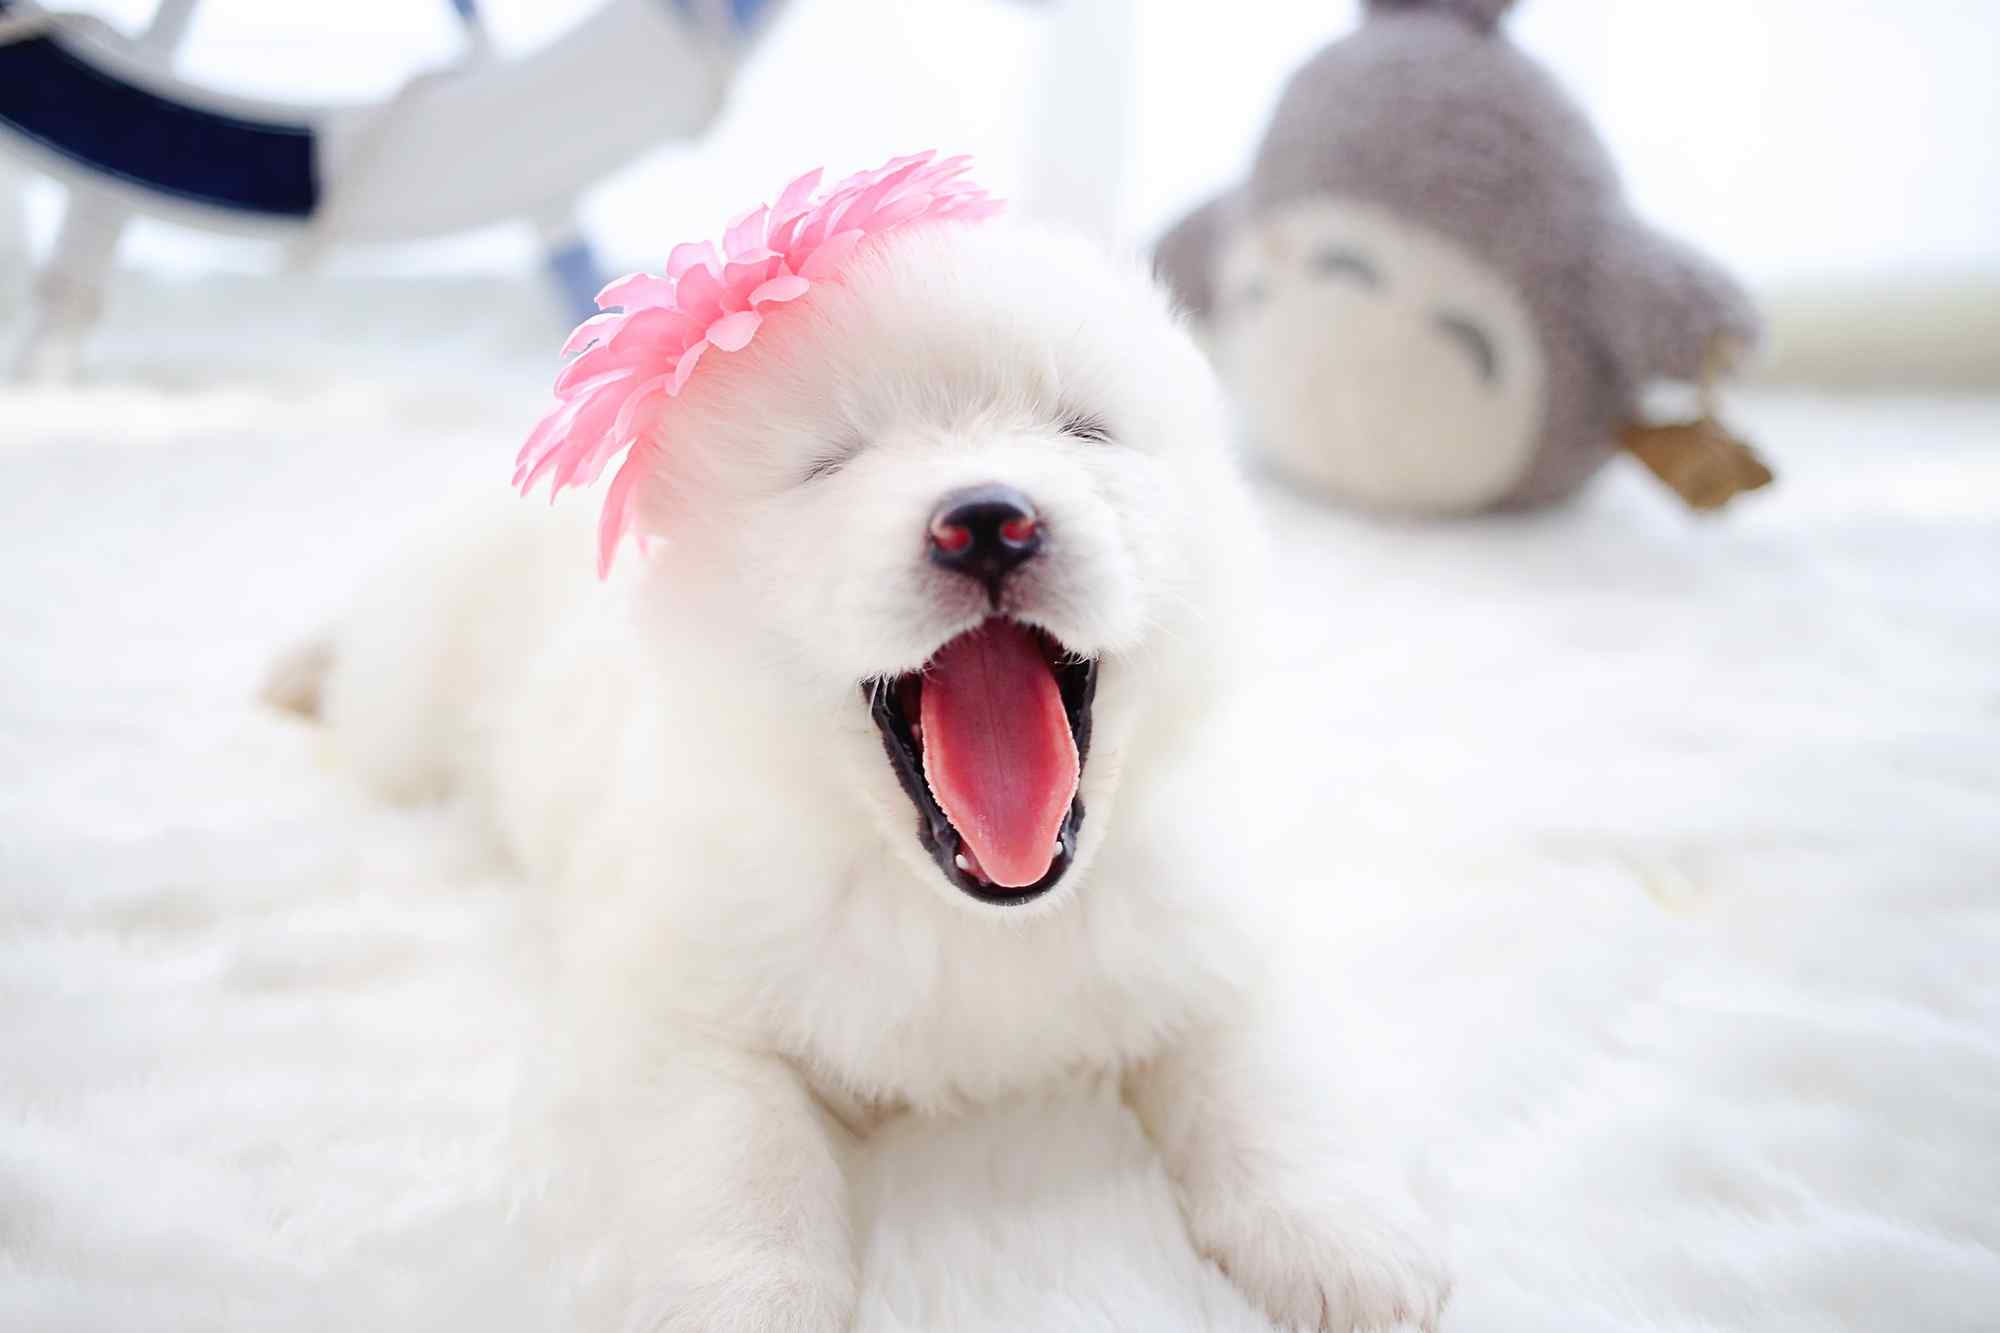 头戴粉色花朵的可爱萨摩耶小狗桌面壁纸